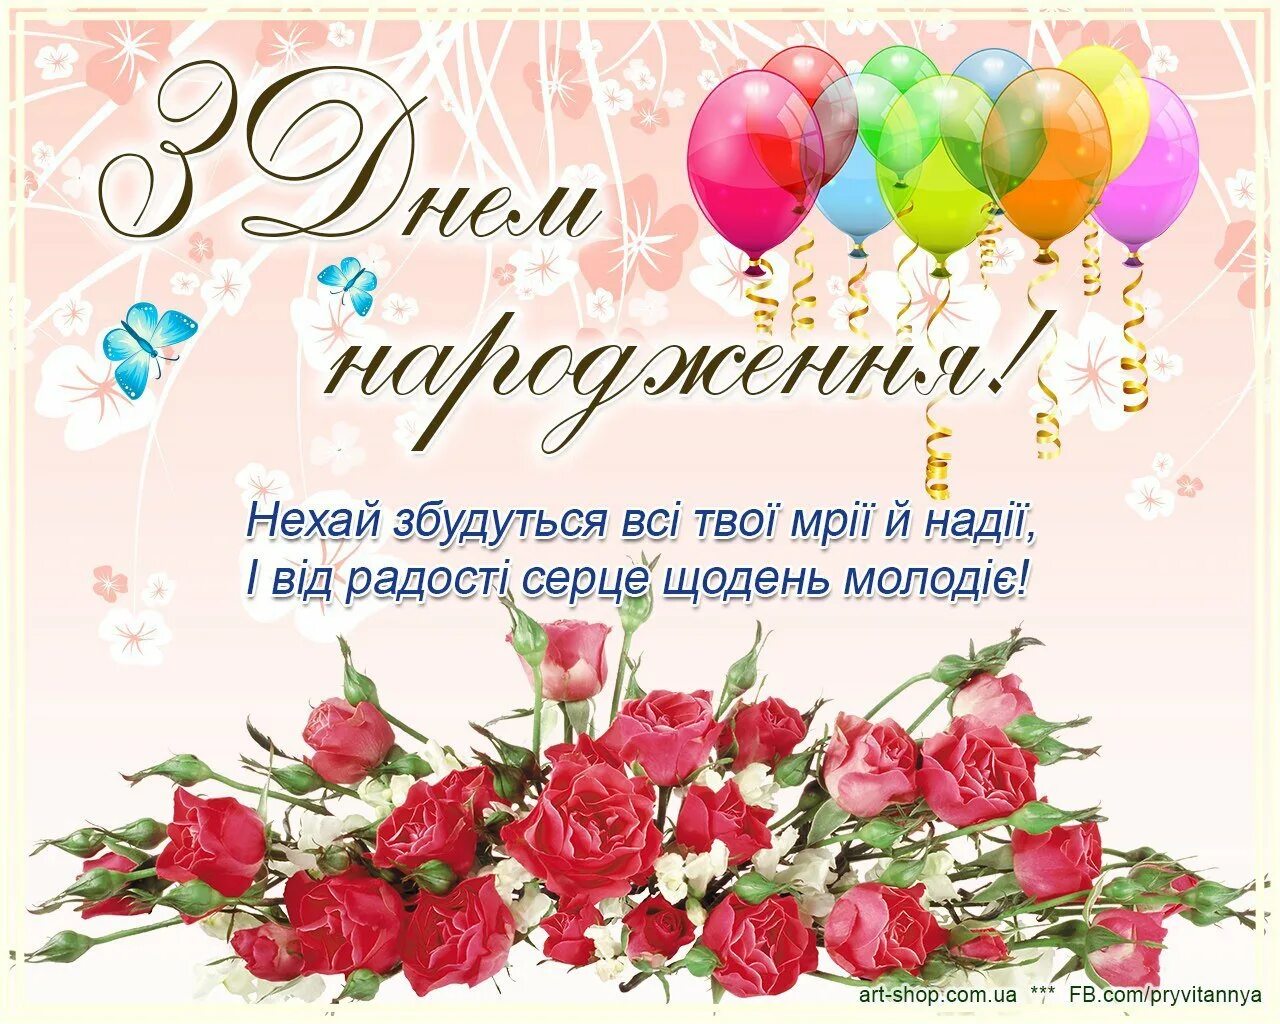 С днем рождения сестре на украинском. Поздравления с днём рождения на украинском языке. Поздравления с днём рождения на украинском языке открытки. Поздравления с днём рождения женщине на украинском языке. Поздравленя с днём рождения на украинском языке.